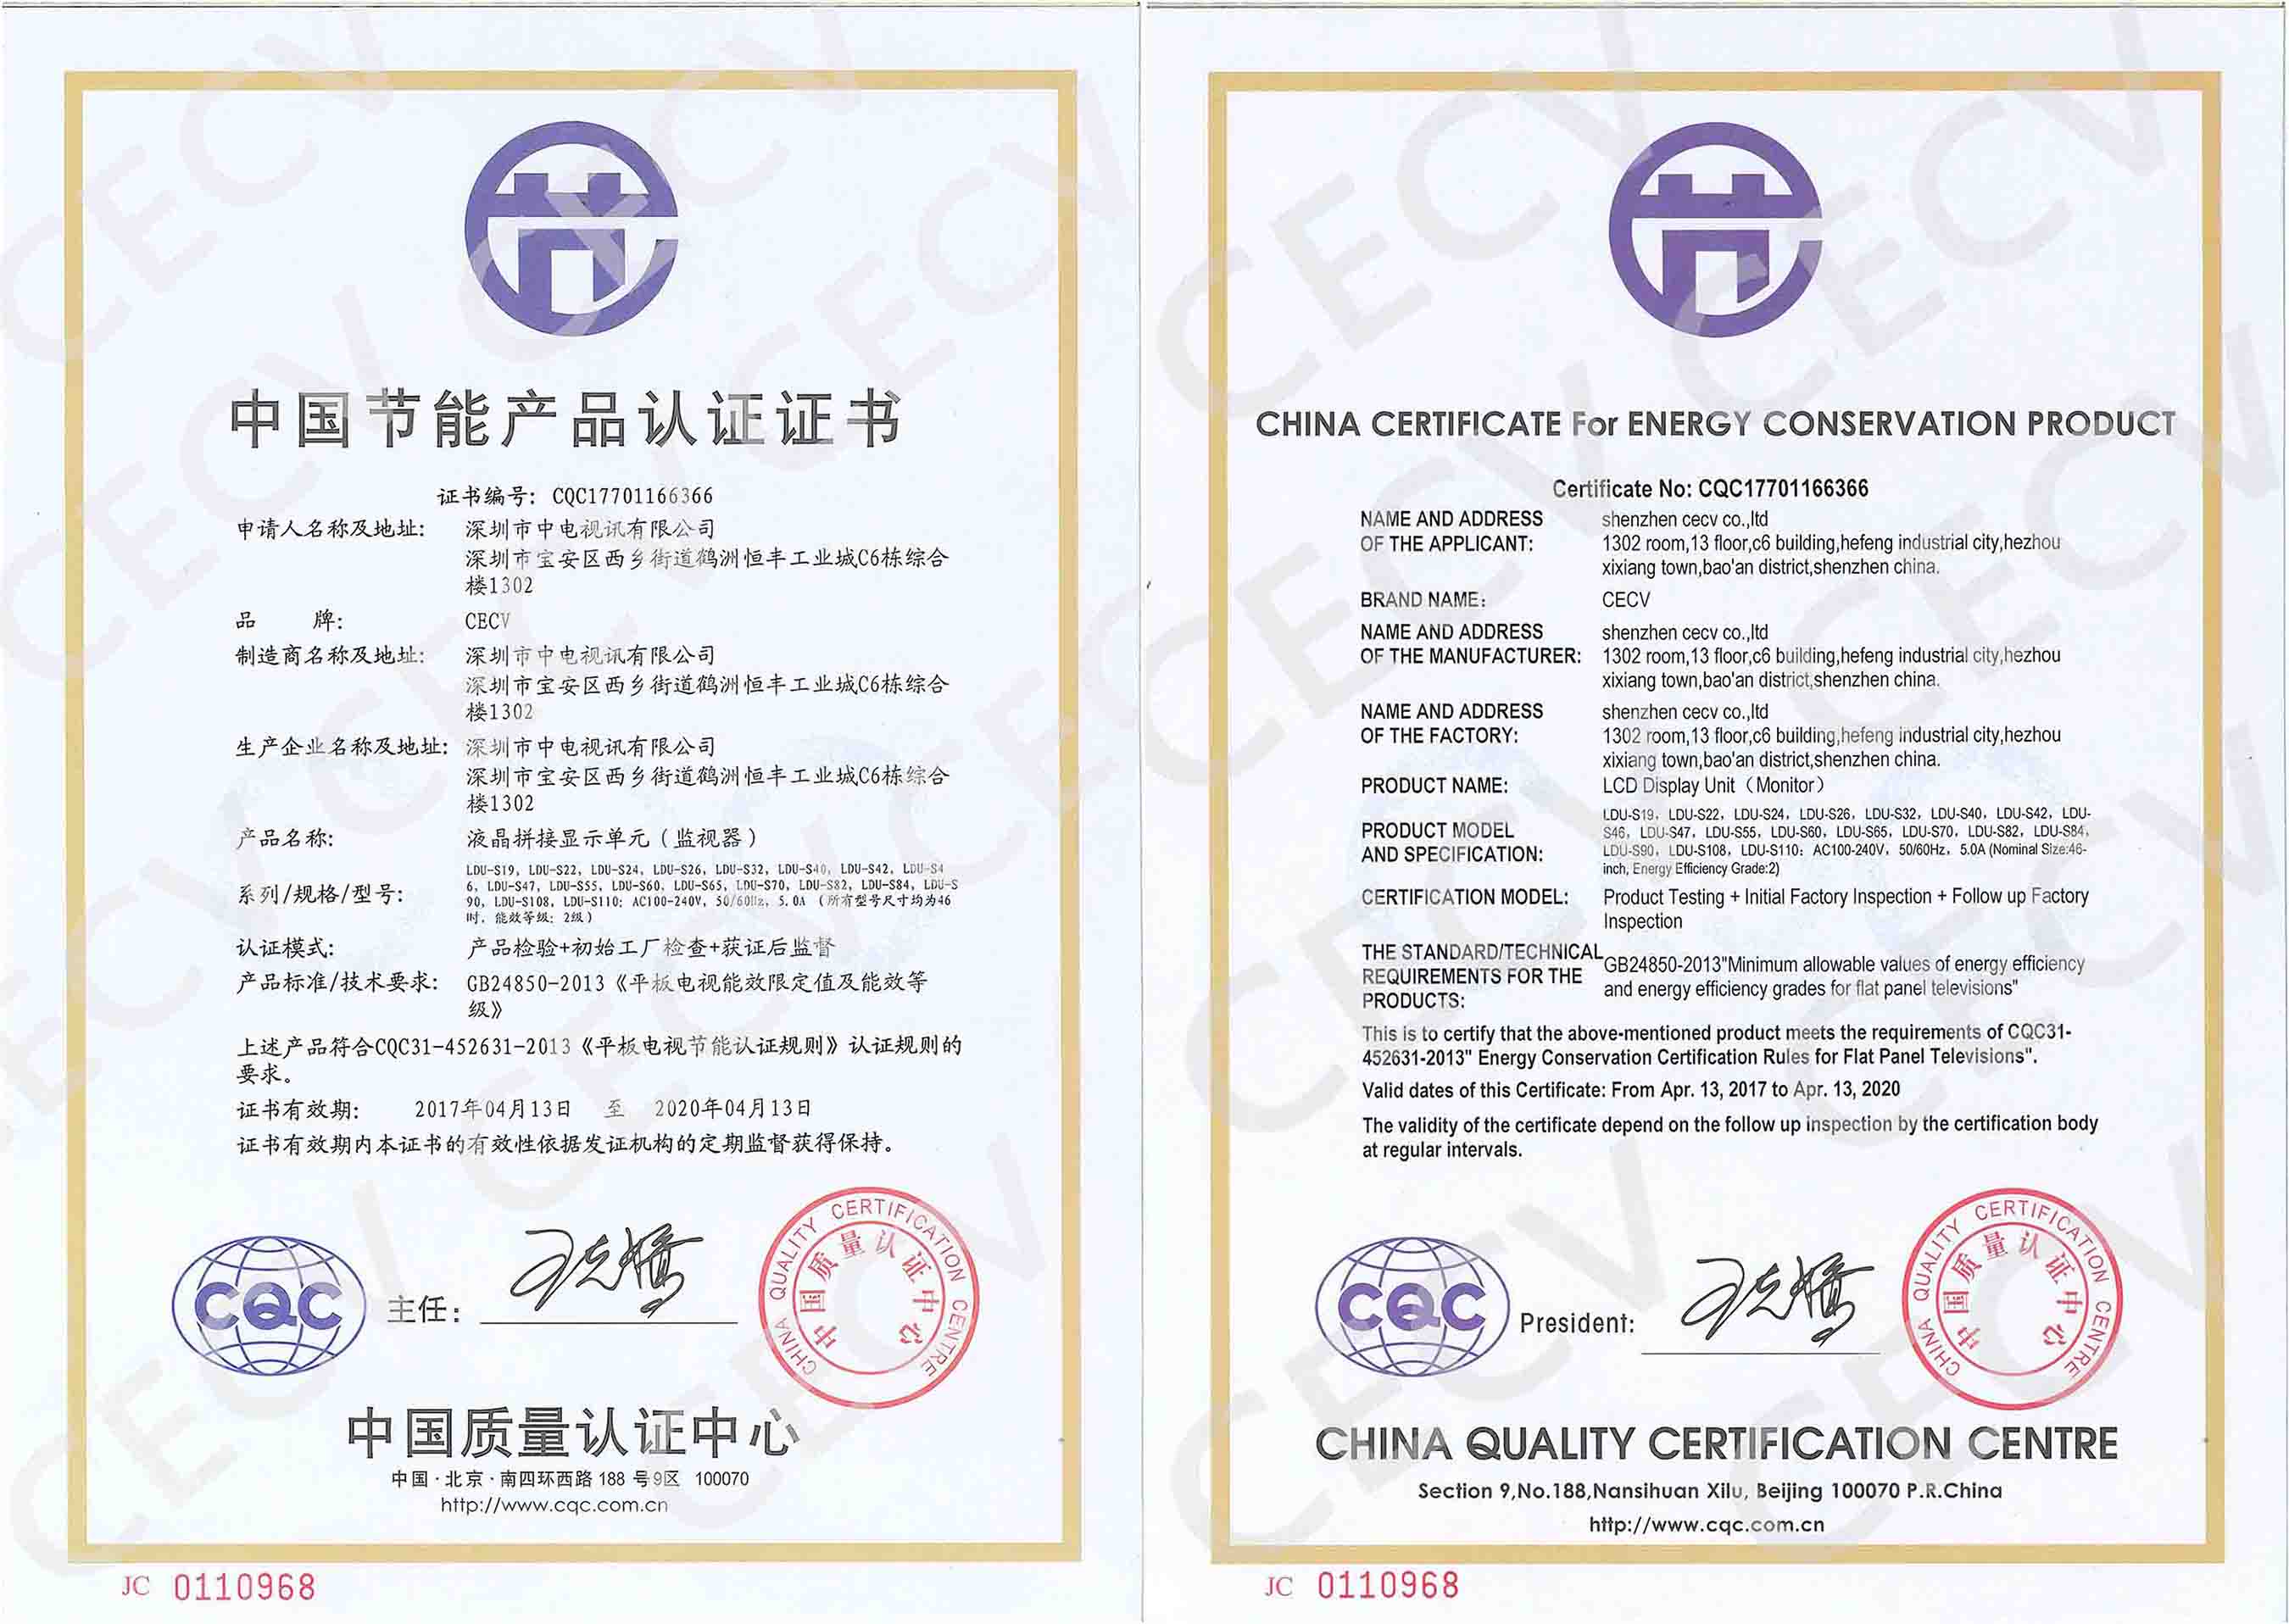 中电视讯cecv顺利通过节能认证年度换证审核